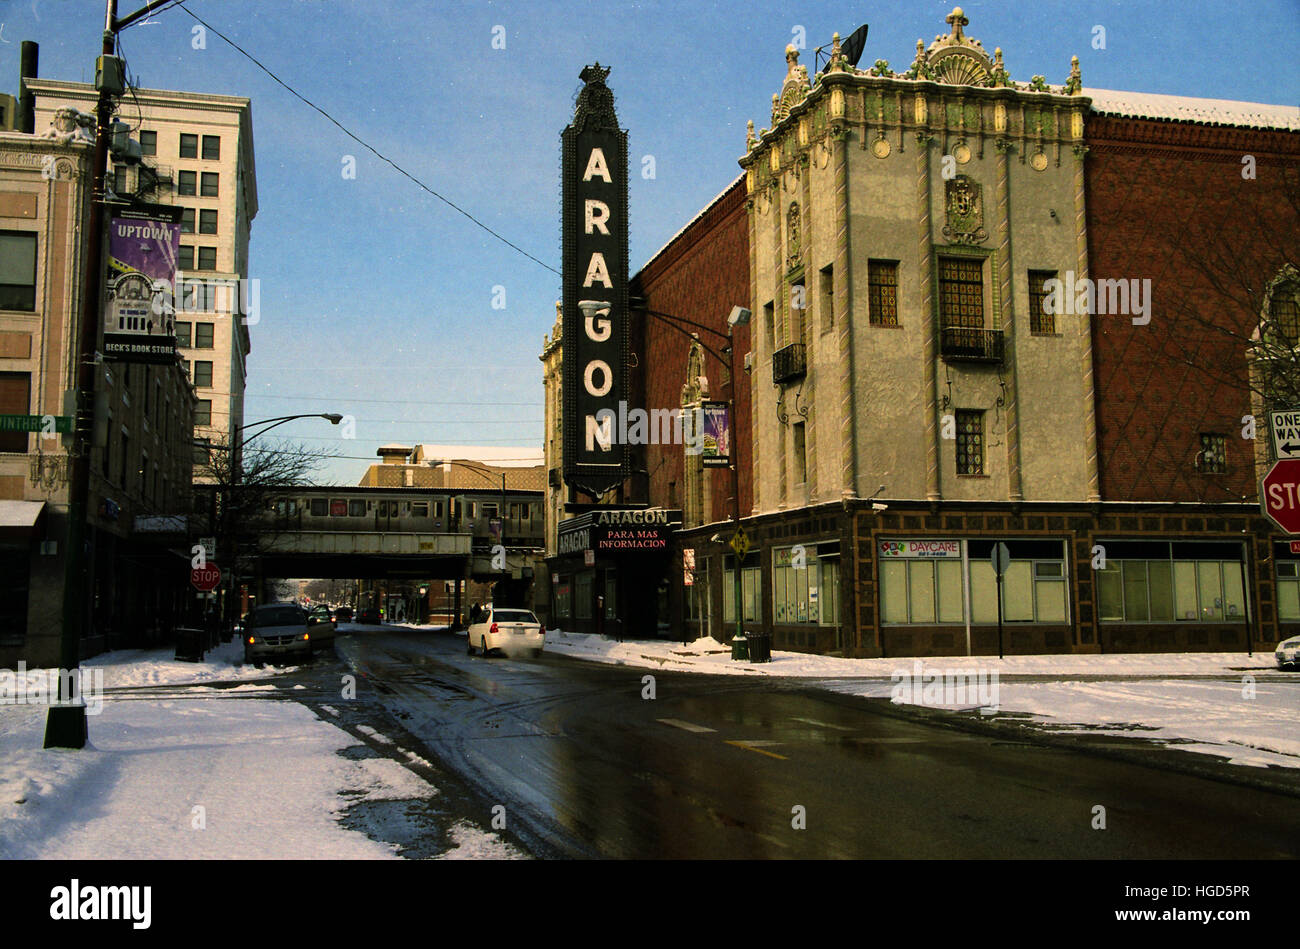 Le aragon ballroom, surnommé 'brawlroom' dans le quartier Uptown Chicago a été un pilier de concerts et animations. Banque D'Images